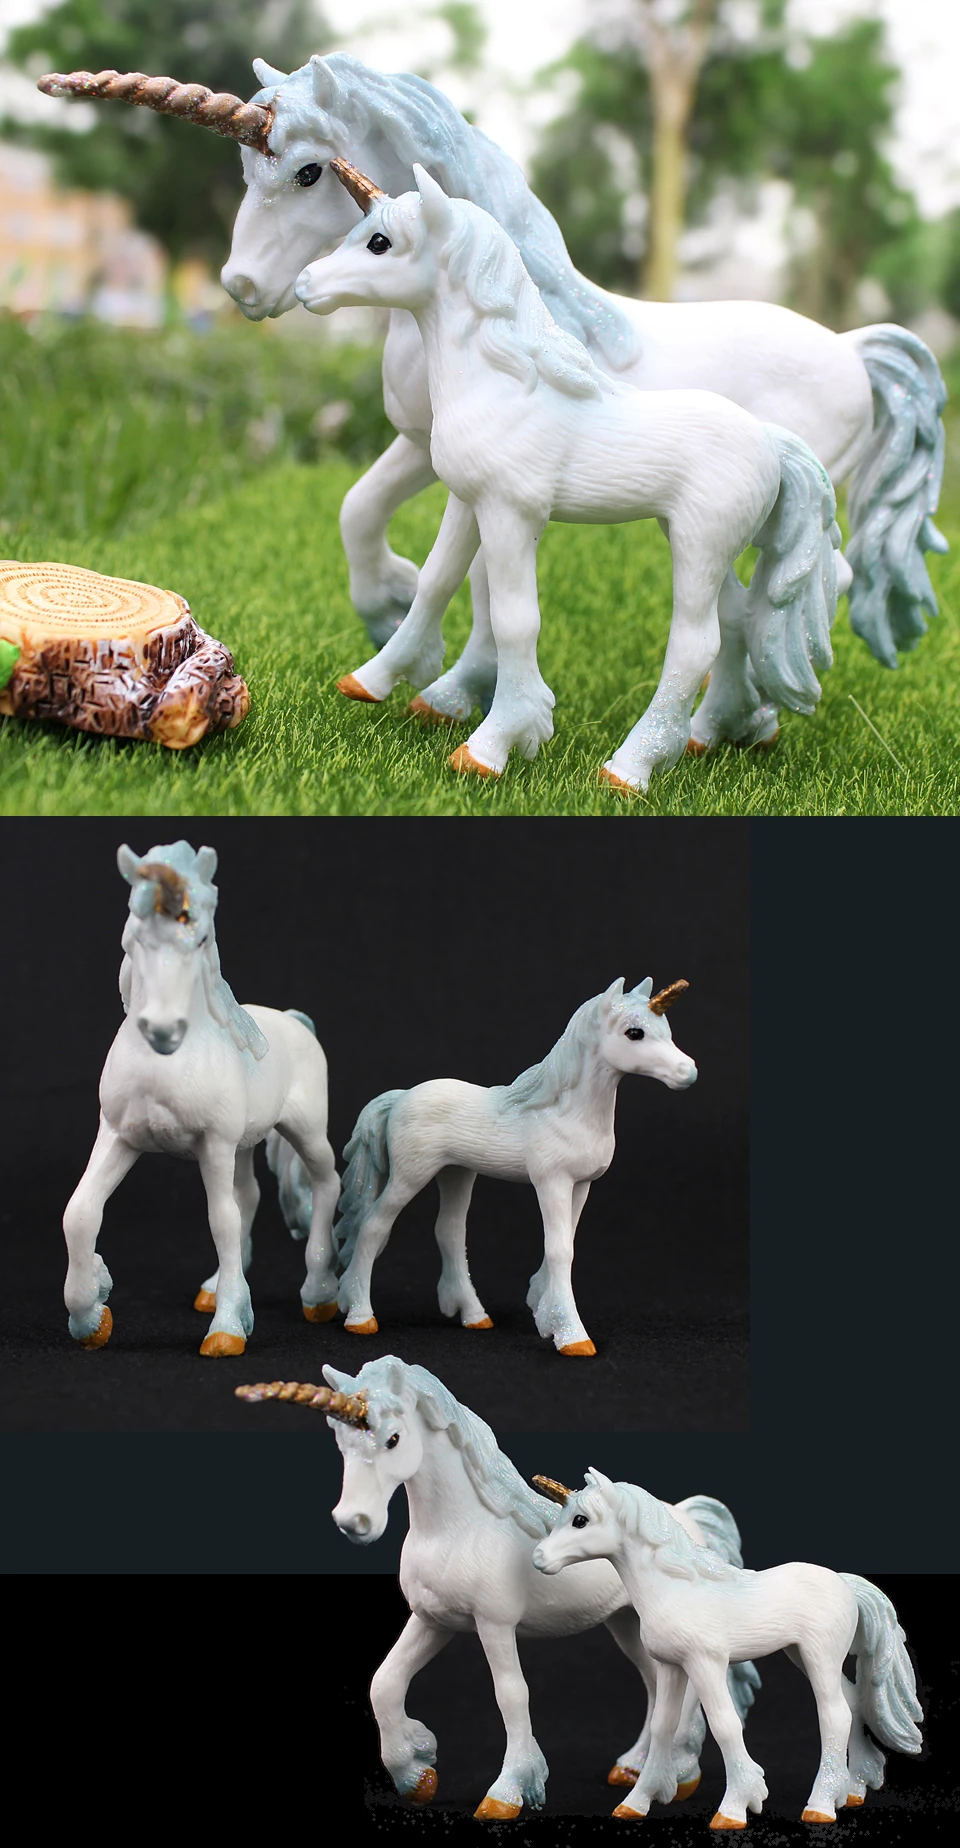 Диких животных модель ранчо лошадь игрушка набор в фигурки детей Образование Подарки орнамент